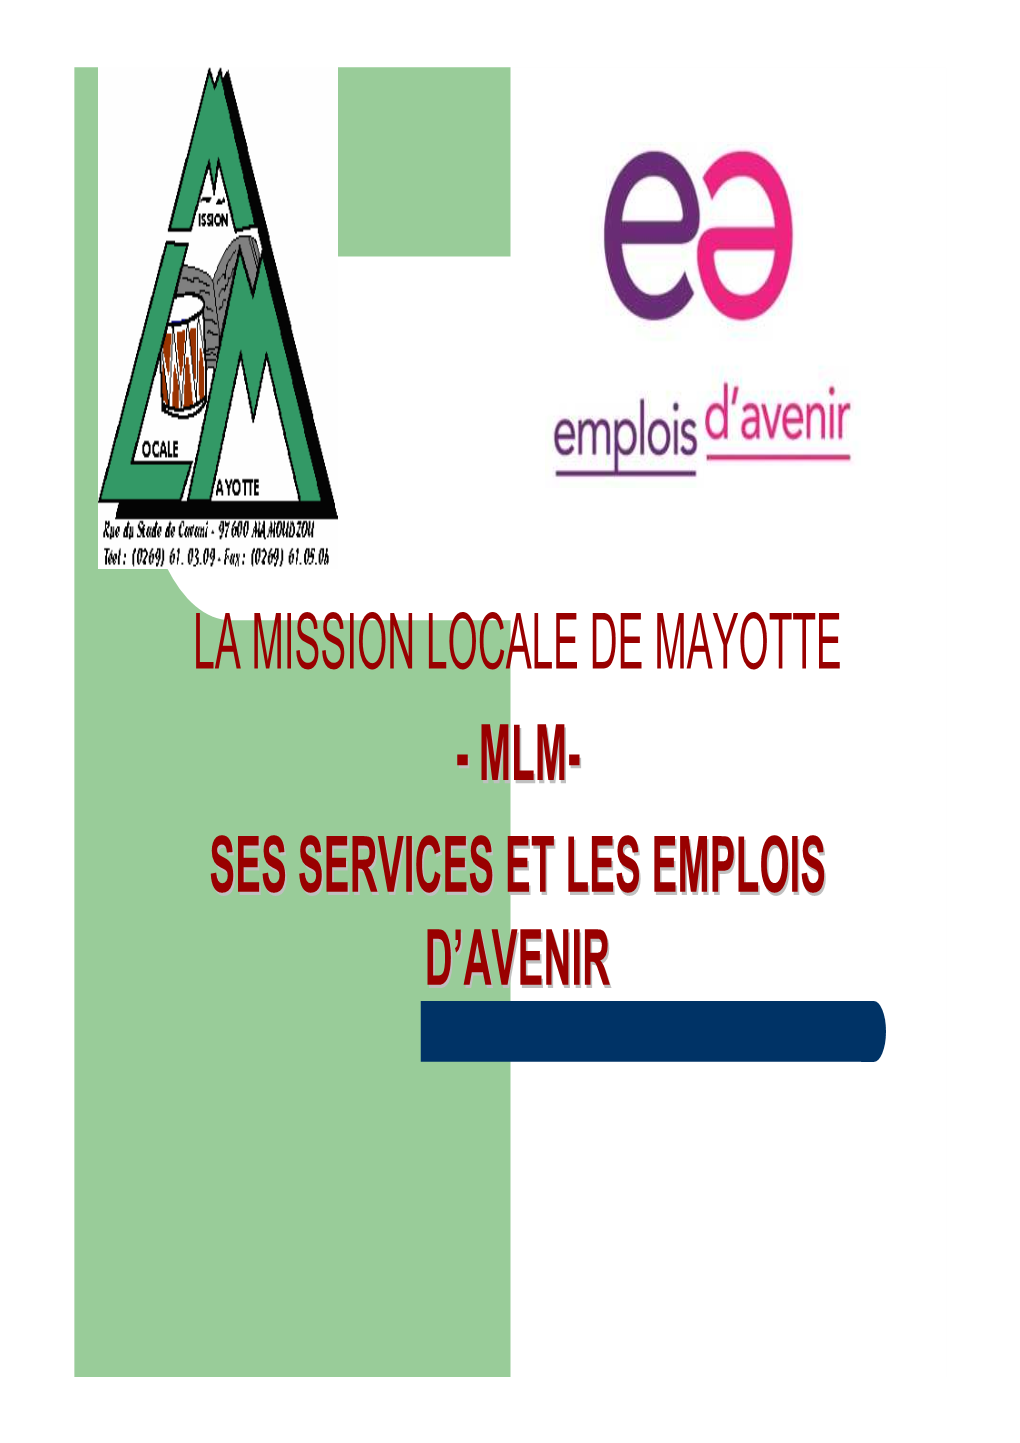 MISSION LOCALE DE MAYOTTE -- MLMMLM-- SESSES SERVICESSERVICES ETET LESLES EMPLOISEMPLOIS DD’’AVENIRAVENIR La Mission Locale De Mayotte